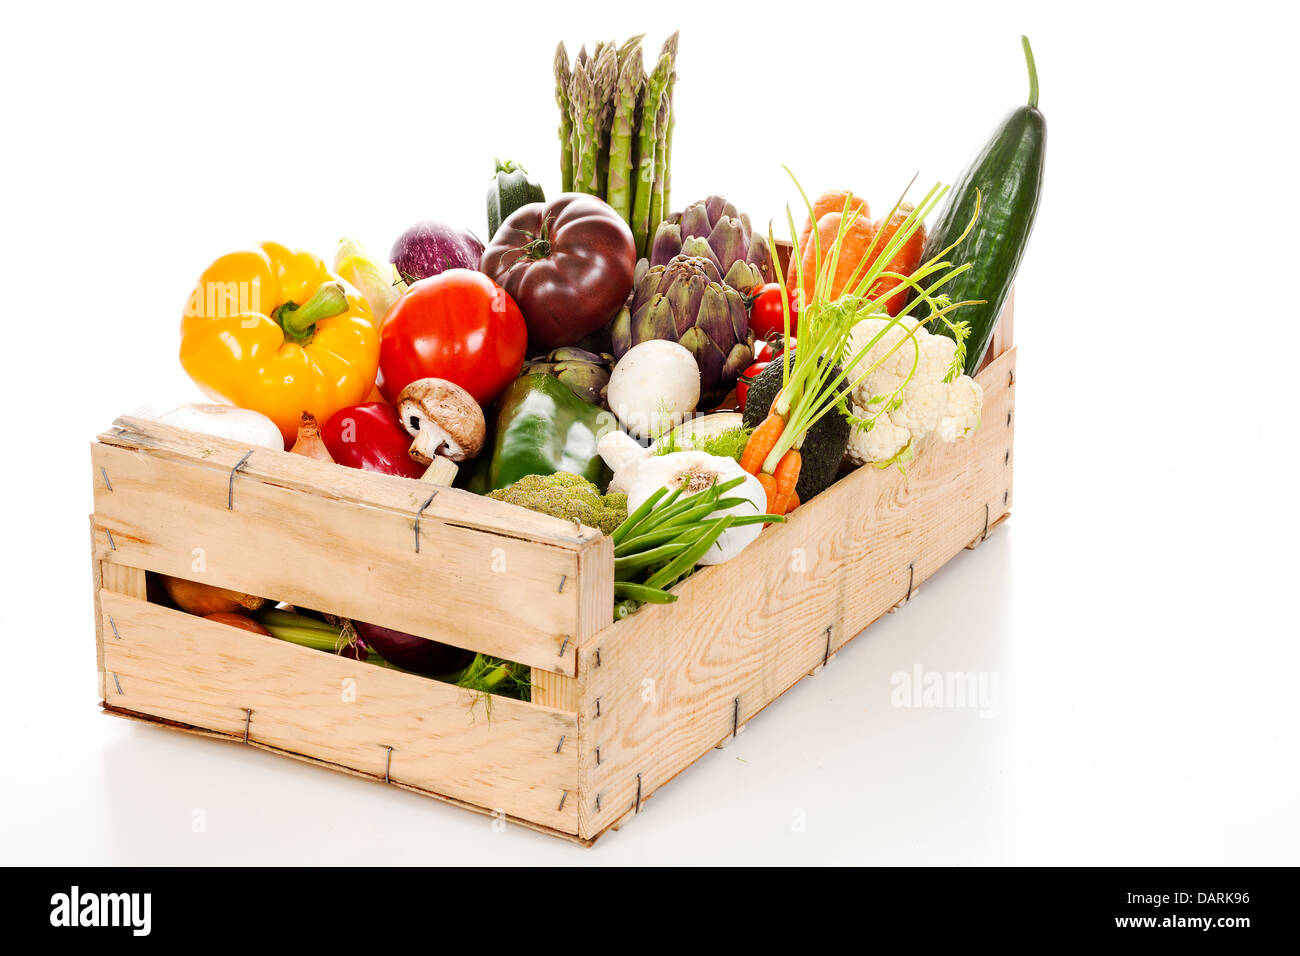 Assortiment de légumes frais dans une caisse sur fond blanc Banque D'Images